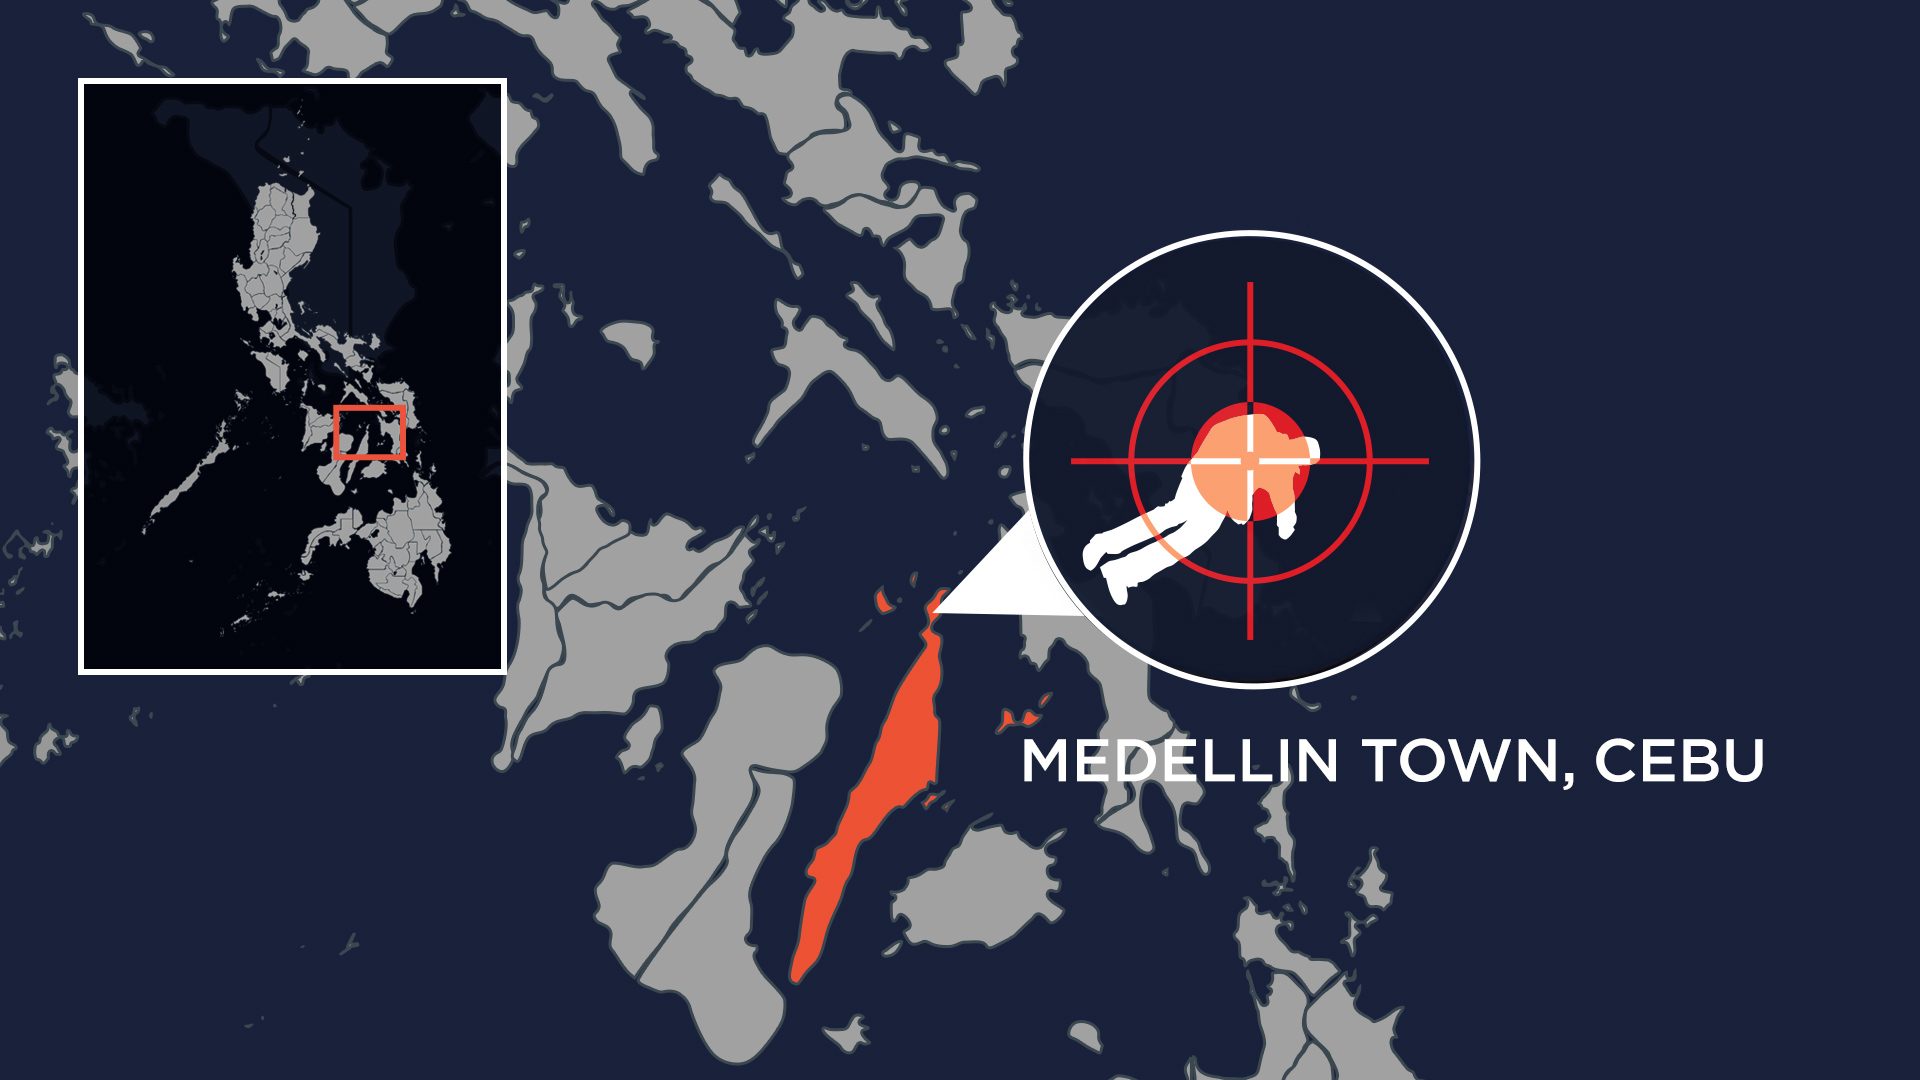 Drug defendant killed in Cebu town on day he left jail